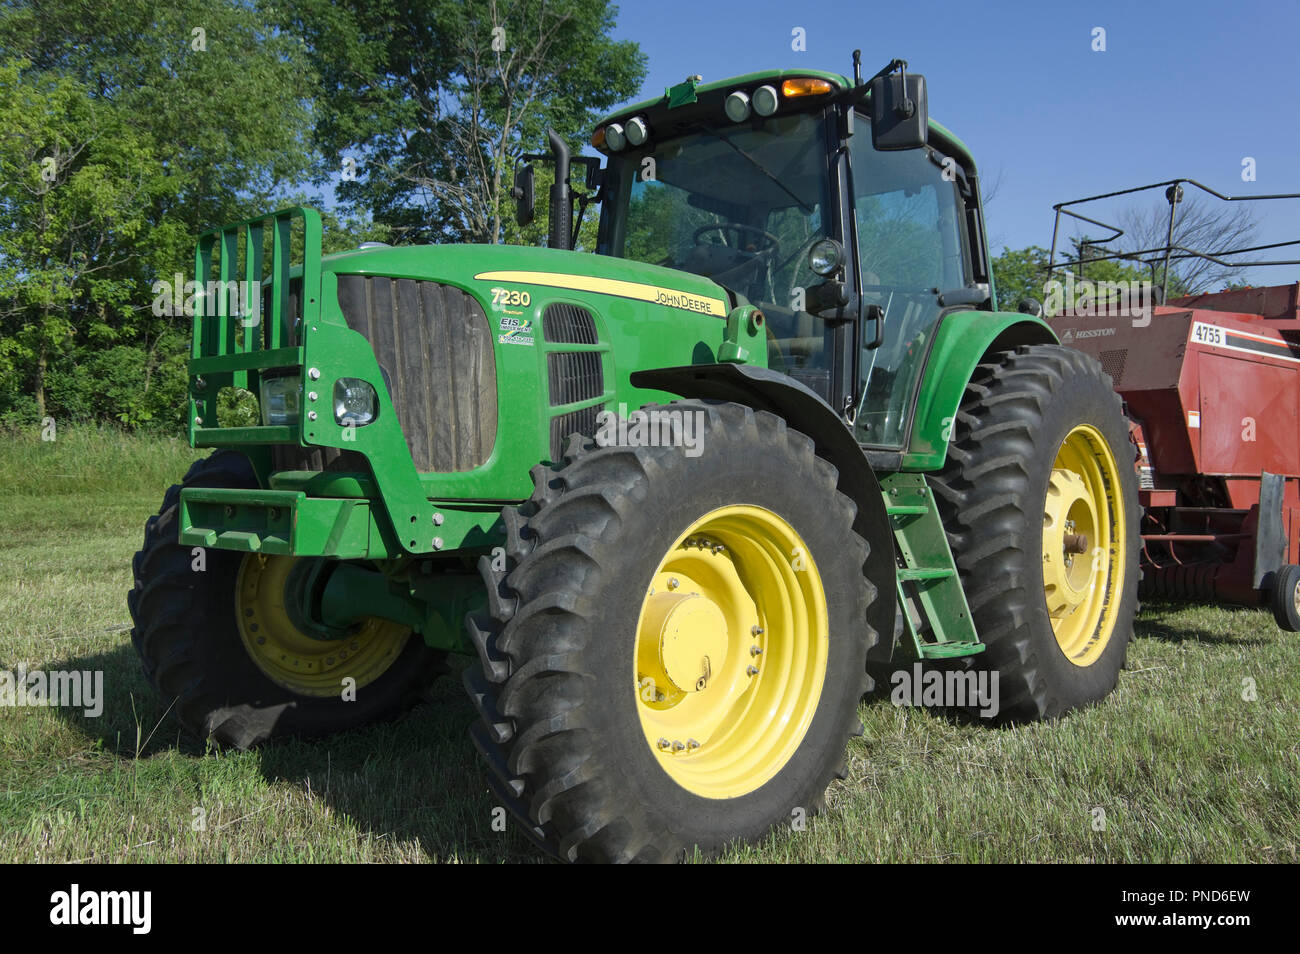 John Deere 7230 Premium row crop tractor Stock Photo